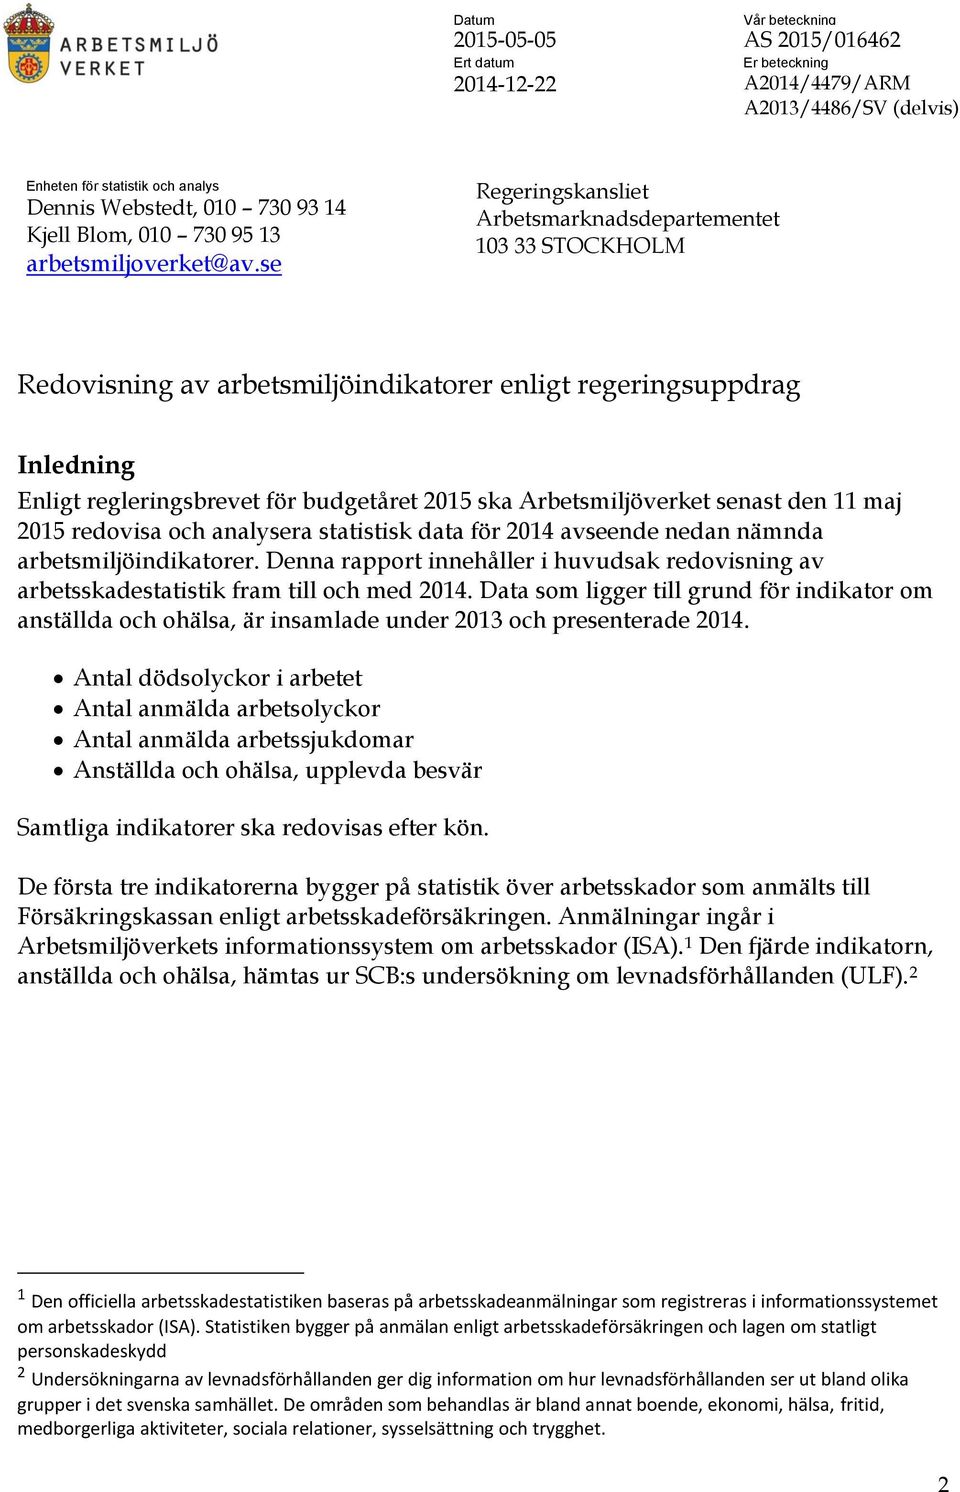 se Regeringskansliet Arbetsmarknadsdepartementet 13 33 STOCKHOLM Redovisning av arbetsmiljöindikatorer enligt regeringsuppdrag Inledning Enligt regleringsbrevet för budgetåret 215 ska